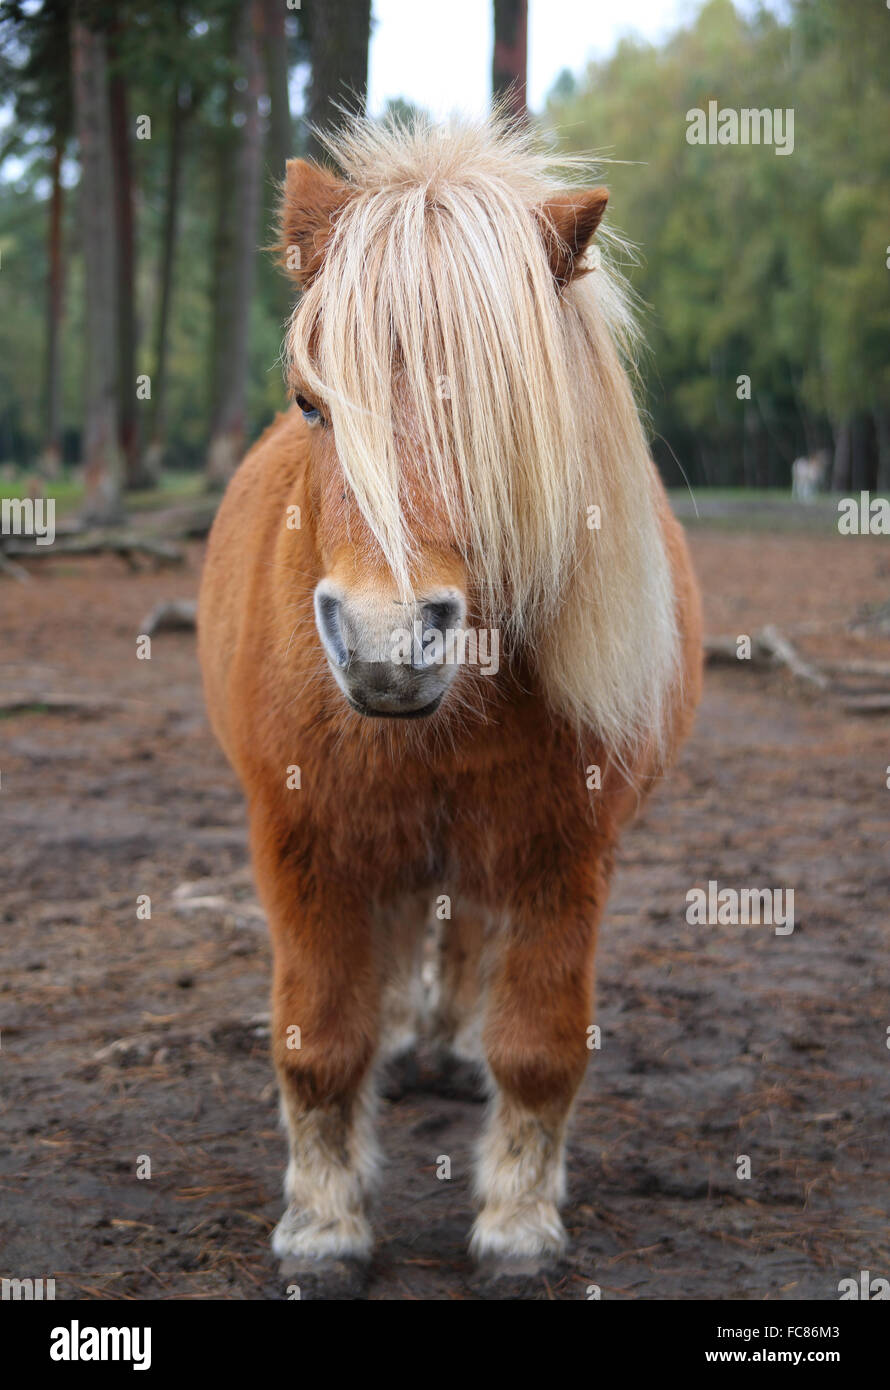 Pony frisur immagini e fotografie stock ad alta risoluzione - Alamy